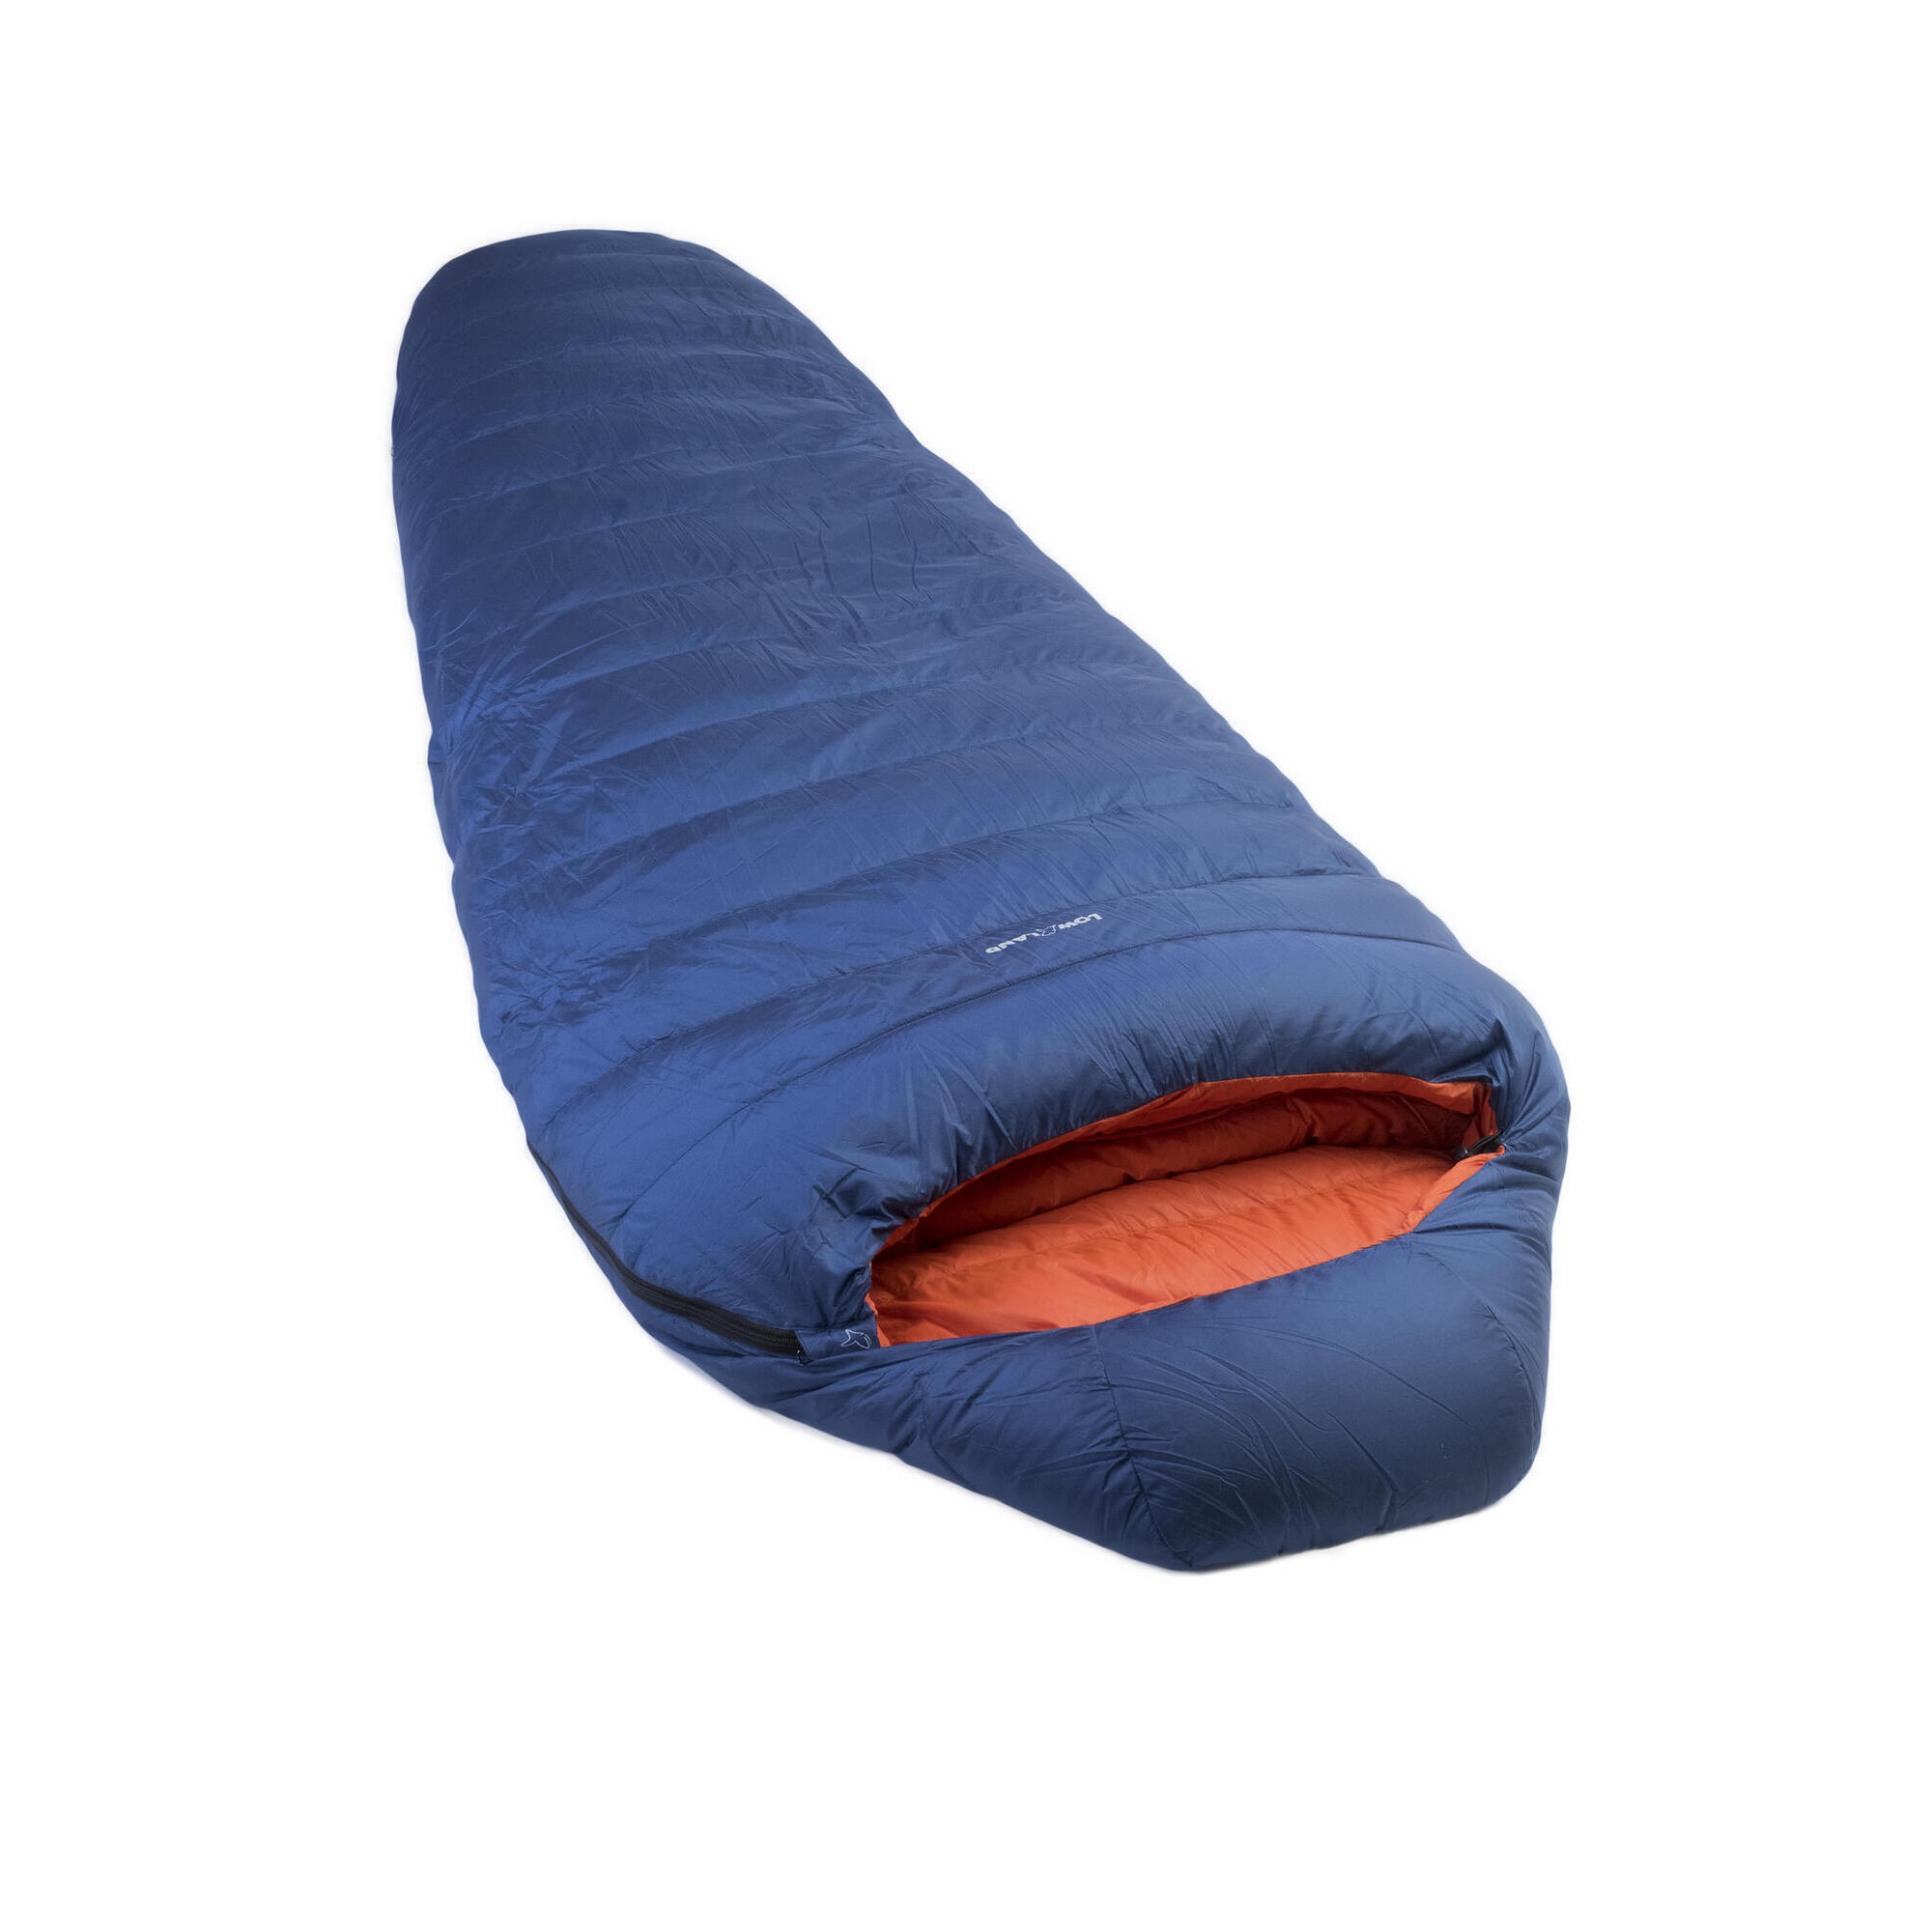 Мешок Kibo - 5 пуховый спальный нейлоновый 225x80 см, сине - оранжевый спальный мешок avi outdoor tielampi 100 eq